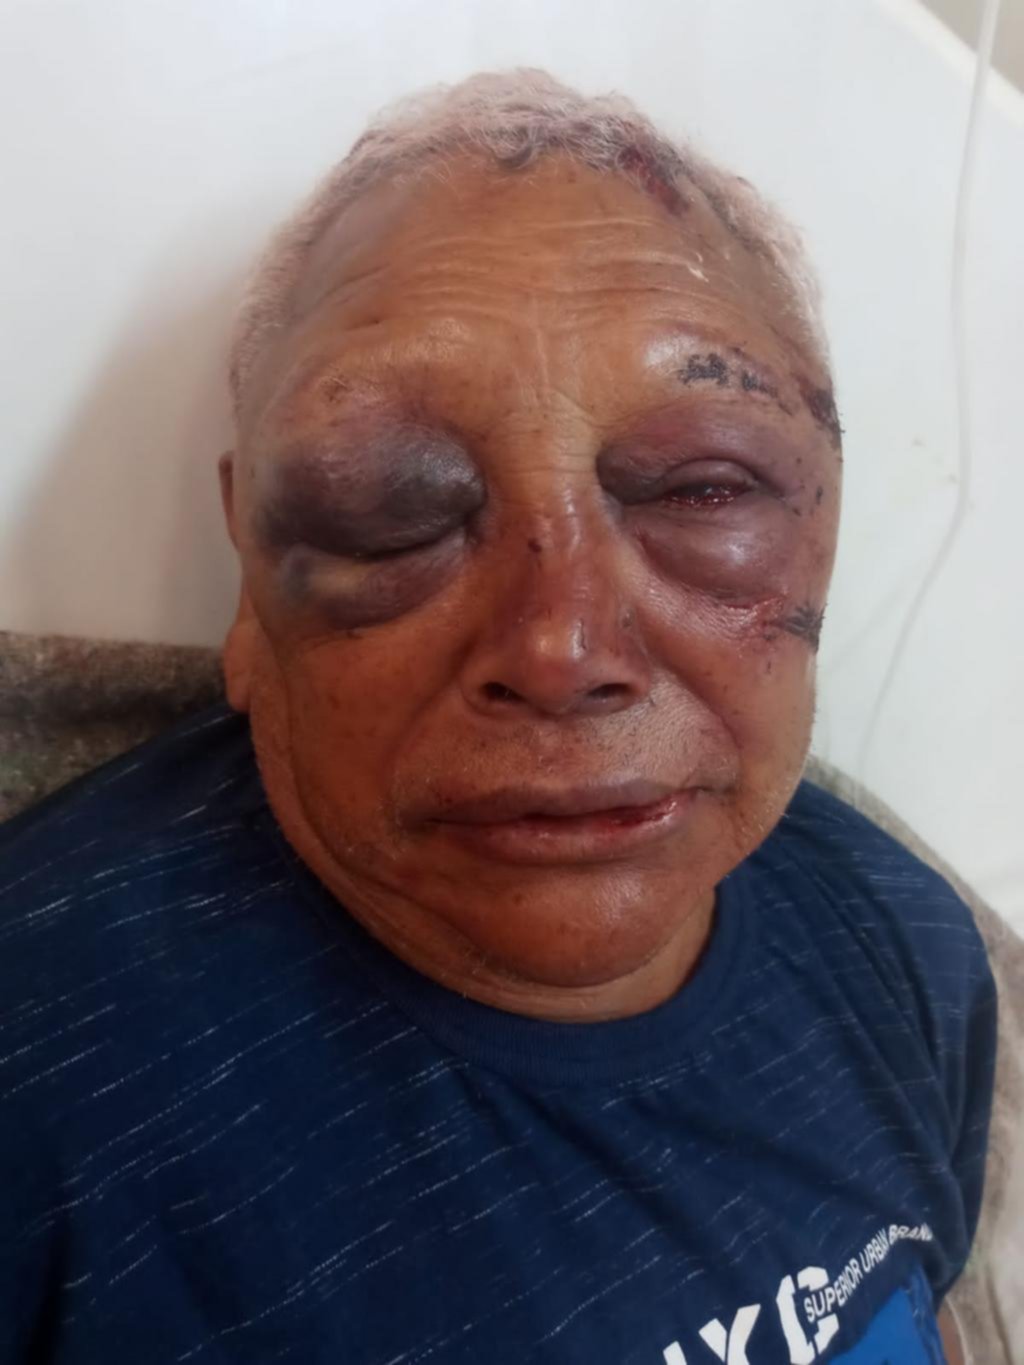 Salvaje asalto a un jubilado: le desfiguraron la cara a golpes en Sicardi